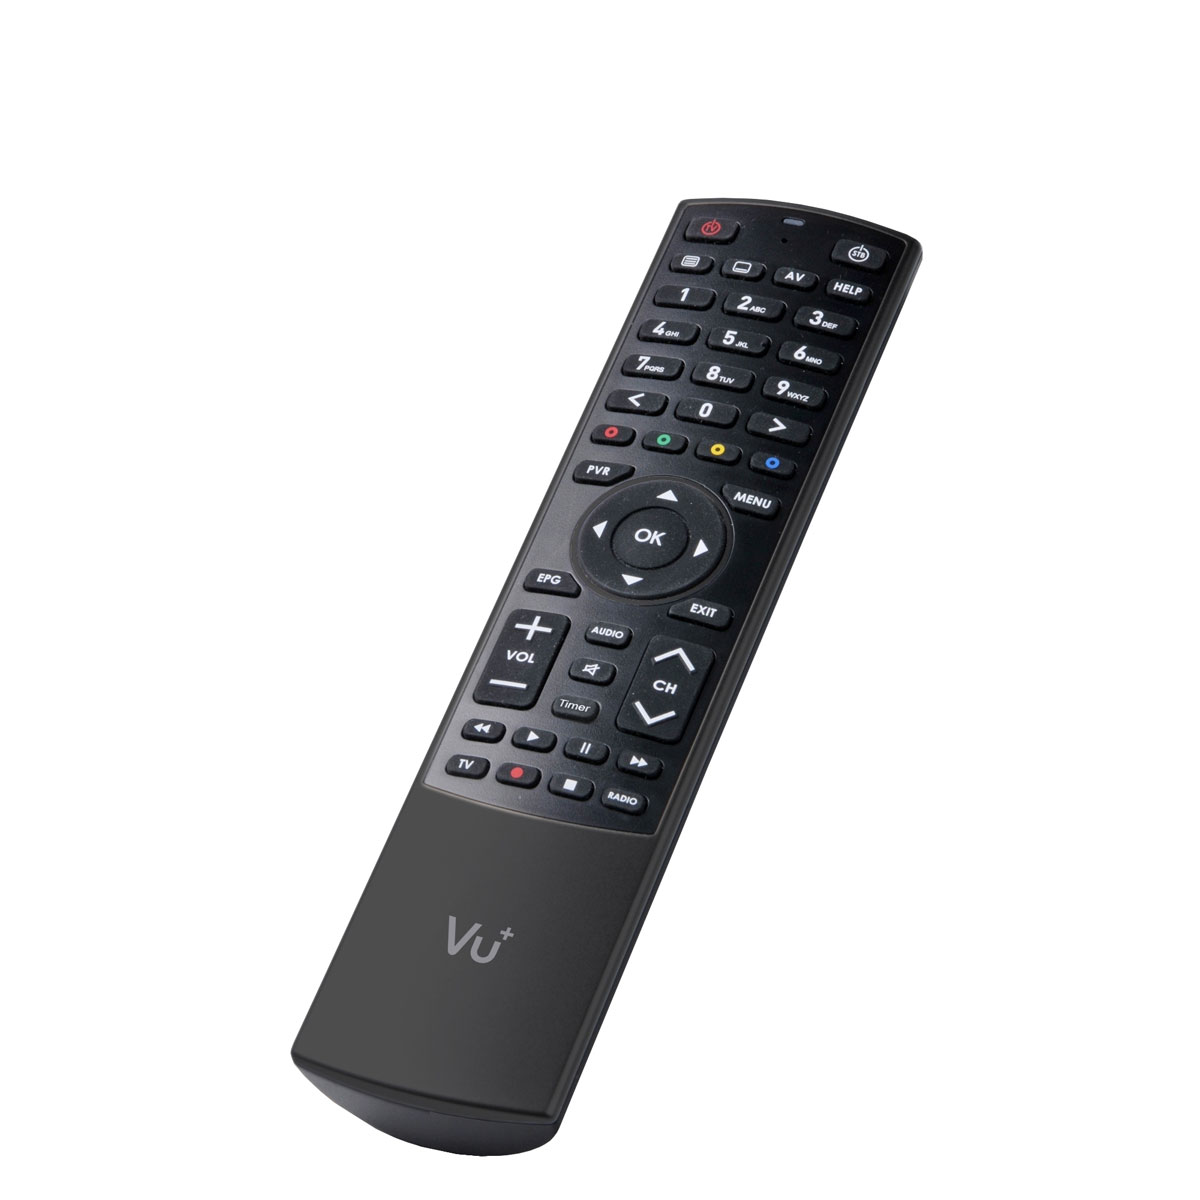 Mbits FullHD Wlan-Stick HD Receiver Receiver SAT VU+ mit DVB-S2 1x ZERO Tuner Digital Linux Sat 150 Sat (Schwarz) Antenne Black